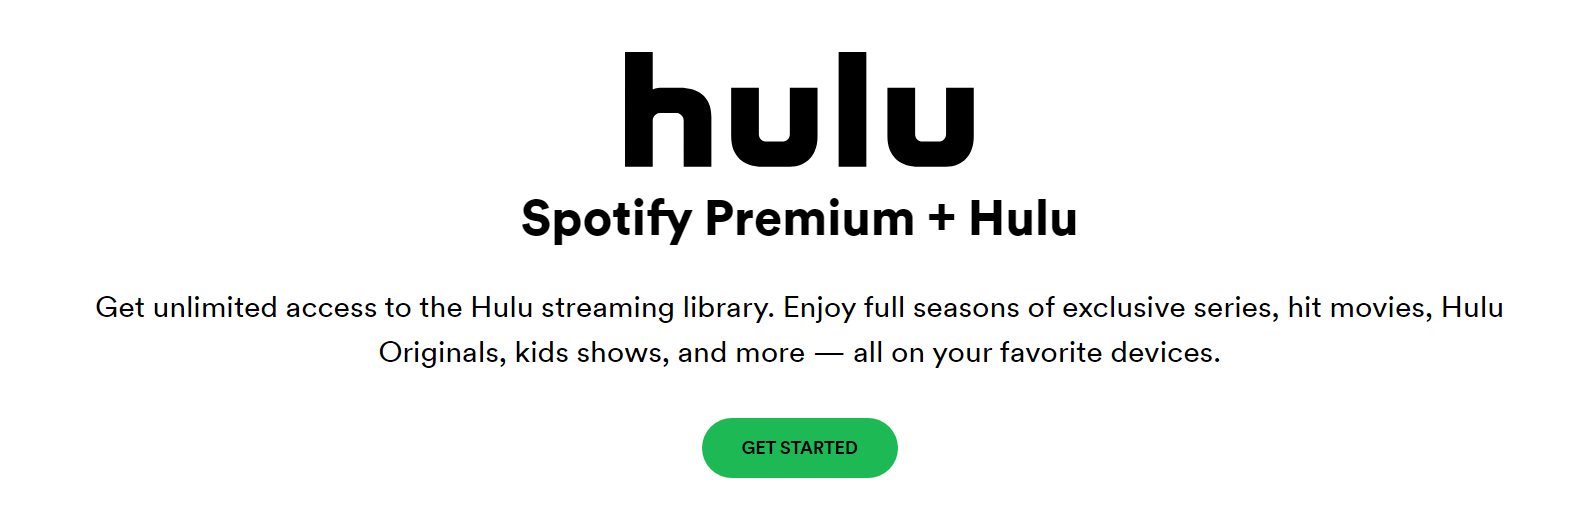 Hulu and Spotify partnership ad